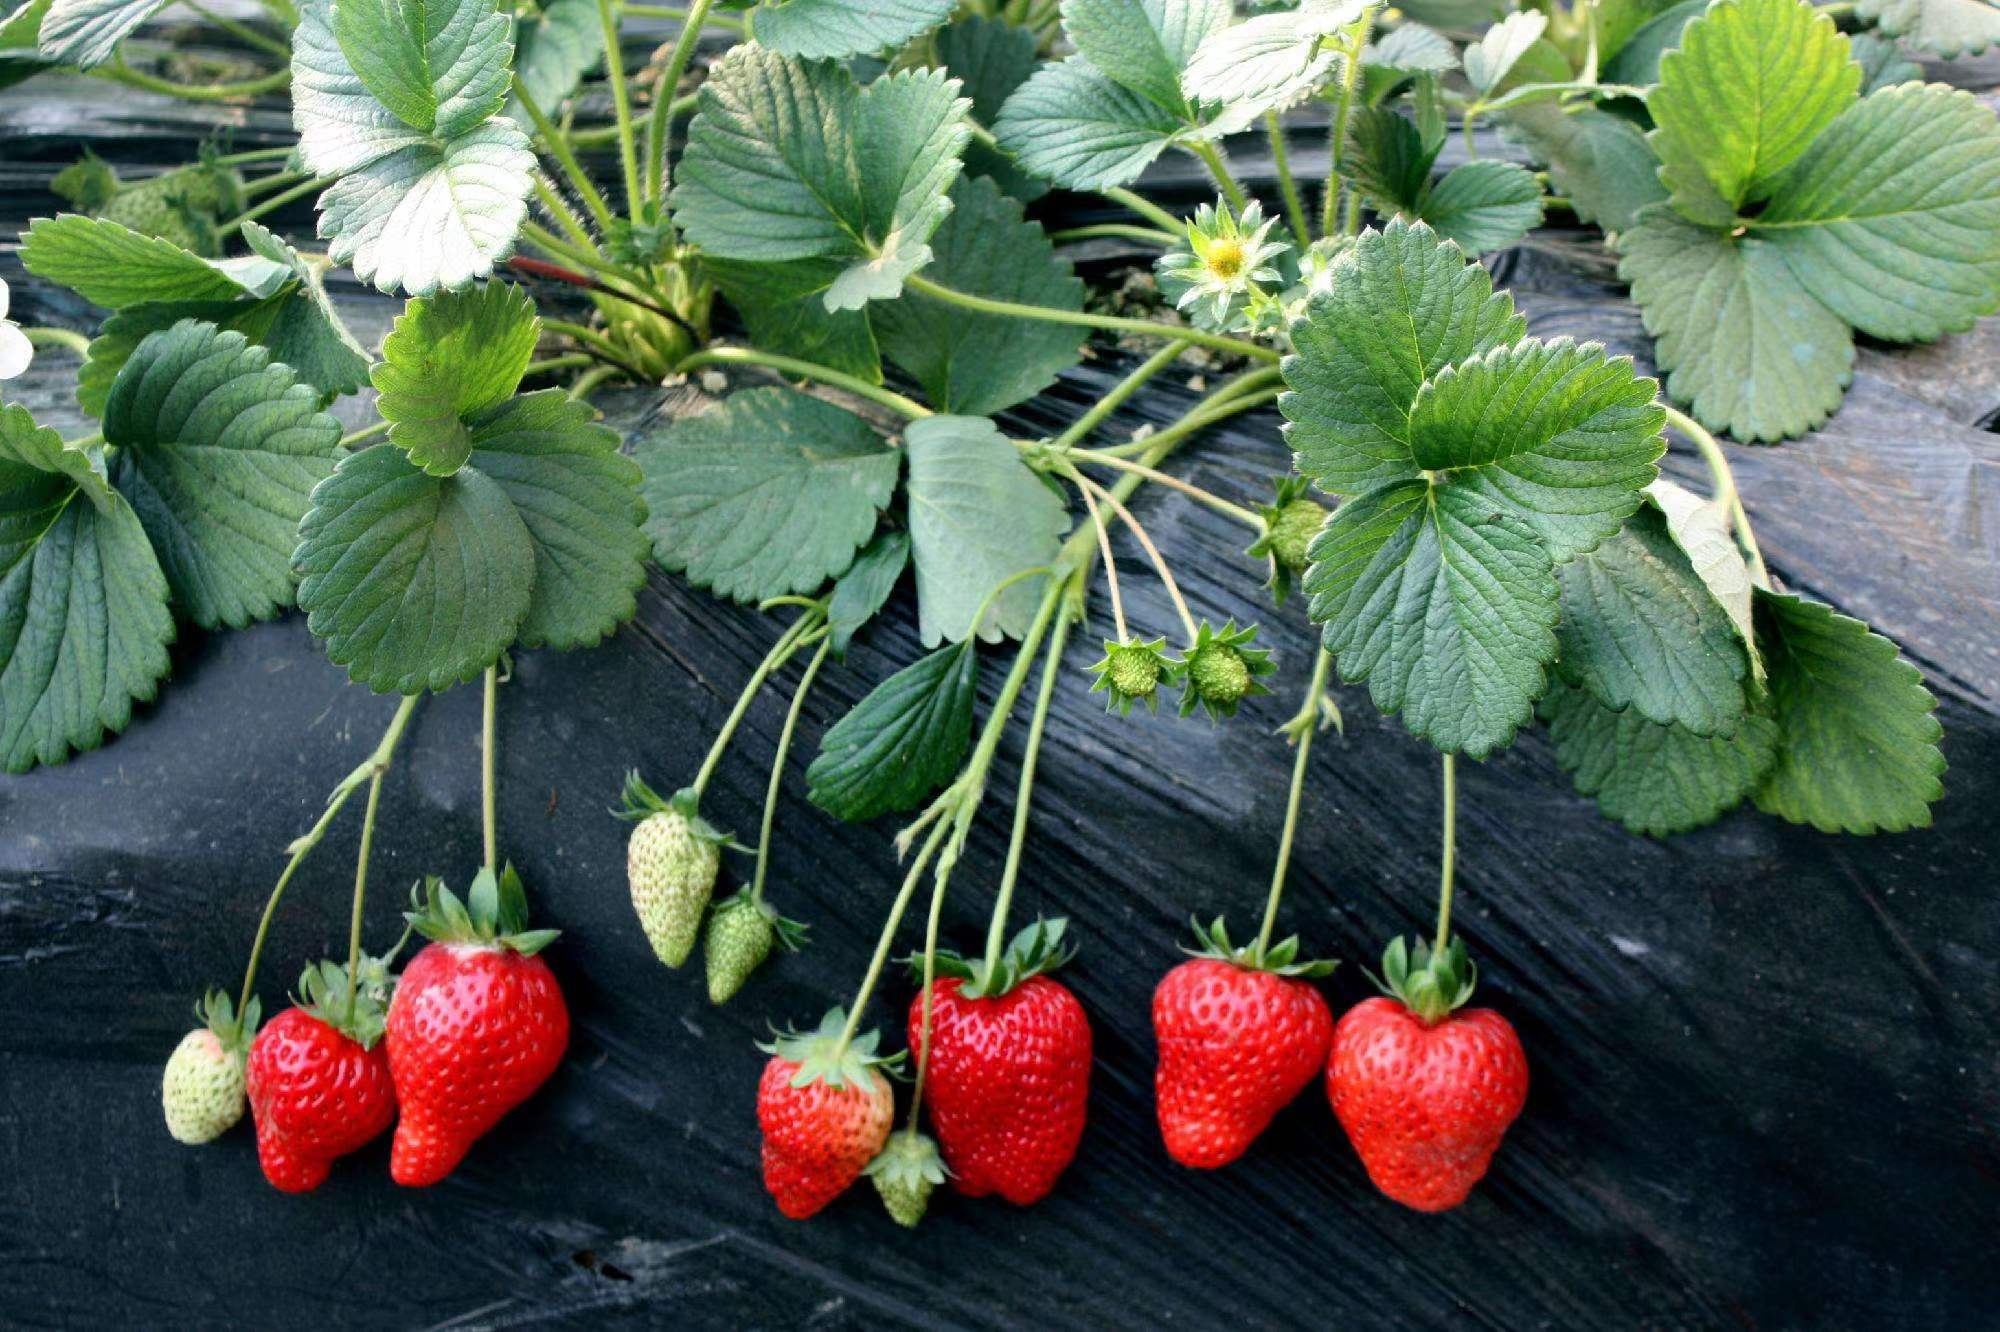 妙7草莓苗妙香草莓苗冷藏车发货脱毒草莓苗